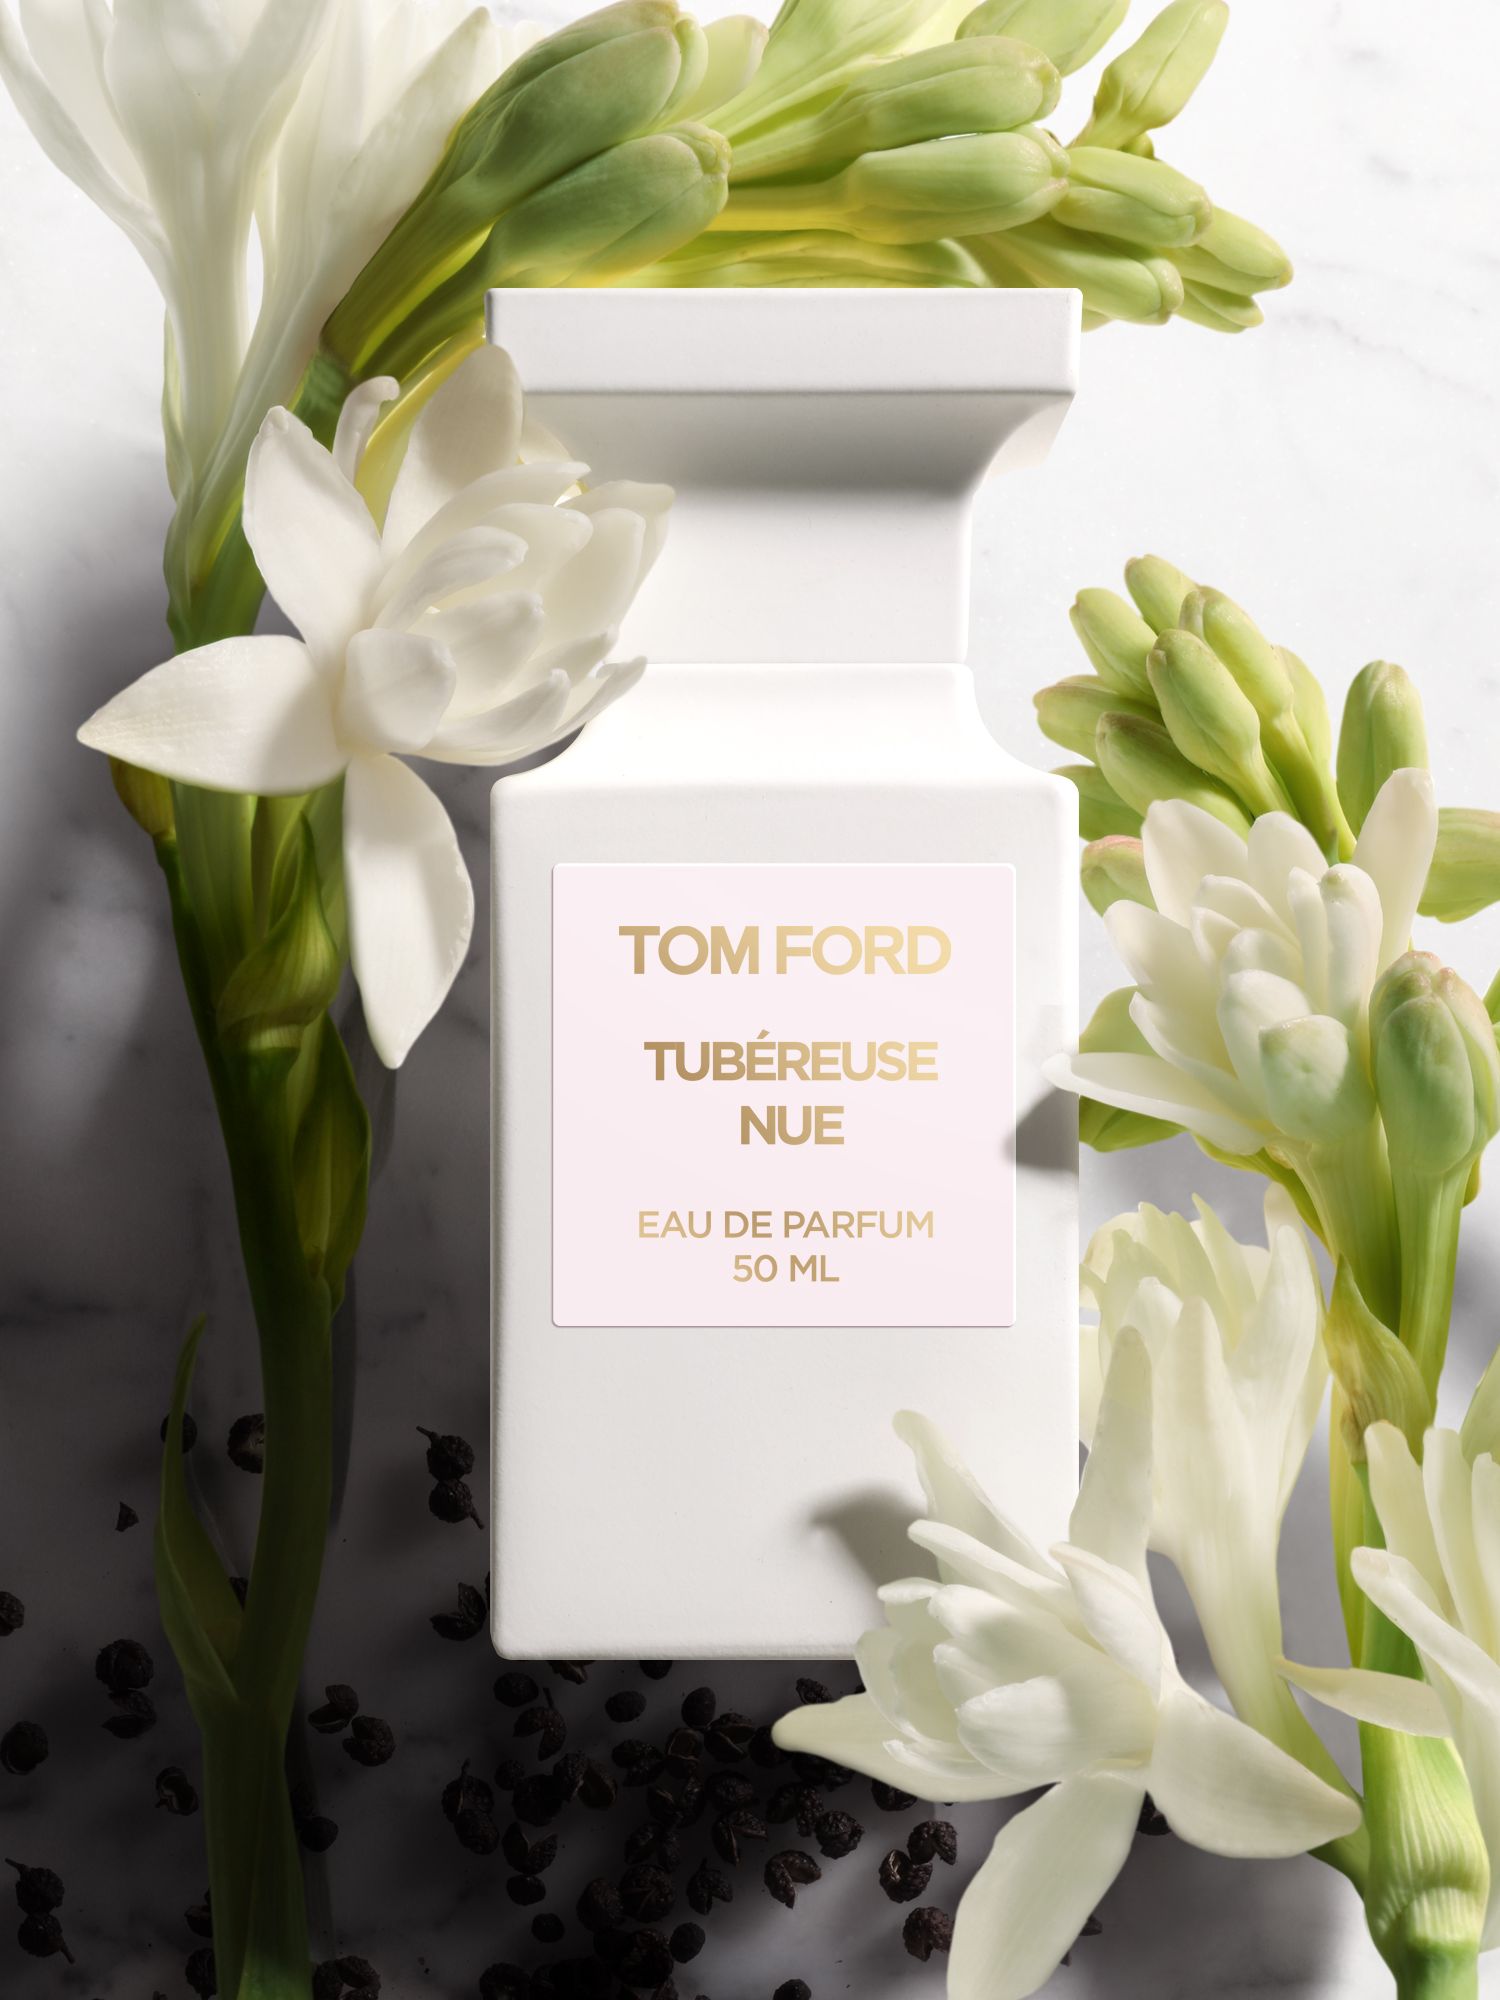 TOM FORD Private Blend Tubéreuse Nue Eau de Parfum, 50ml at John ...